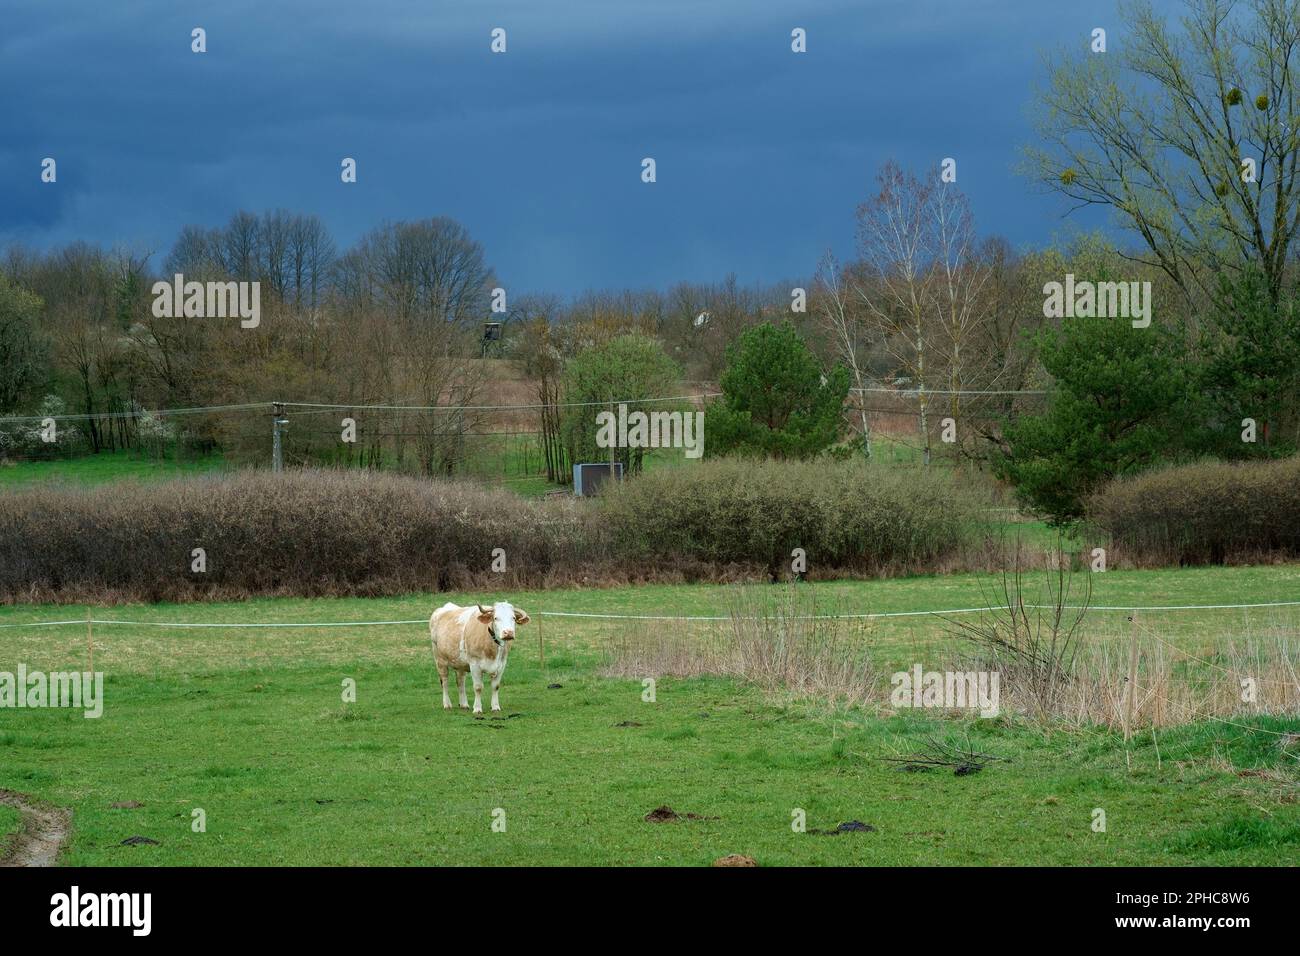 Einsame Milchkuh steht auf einem landwirtschaftlichen Feld unter dunklem, unheilvollem Regen, beladener Himmel, kreis zala, ungarn Stockfoto